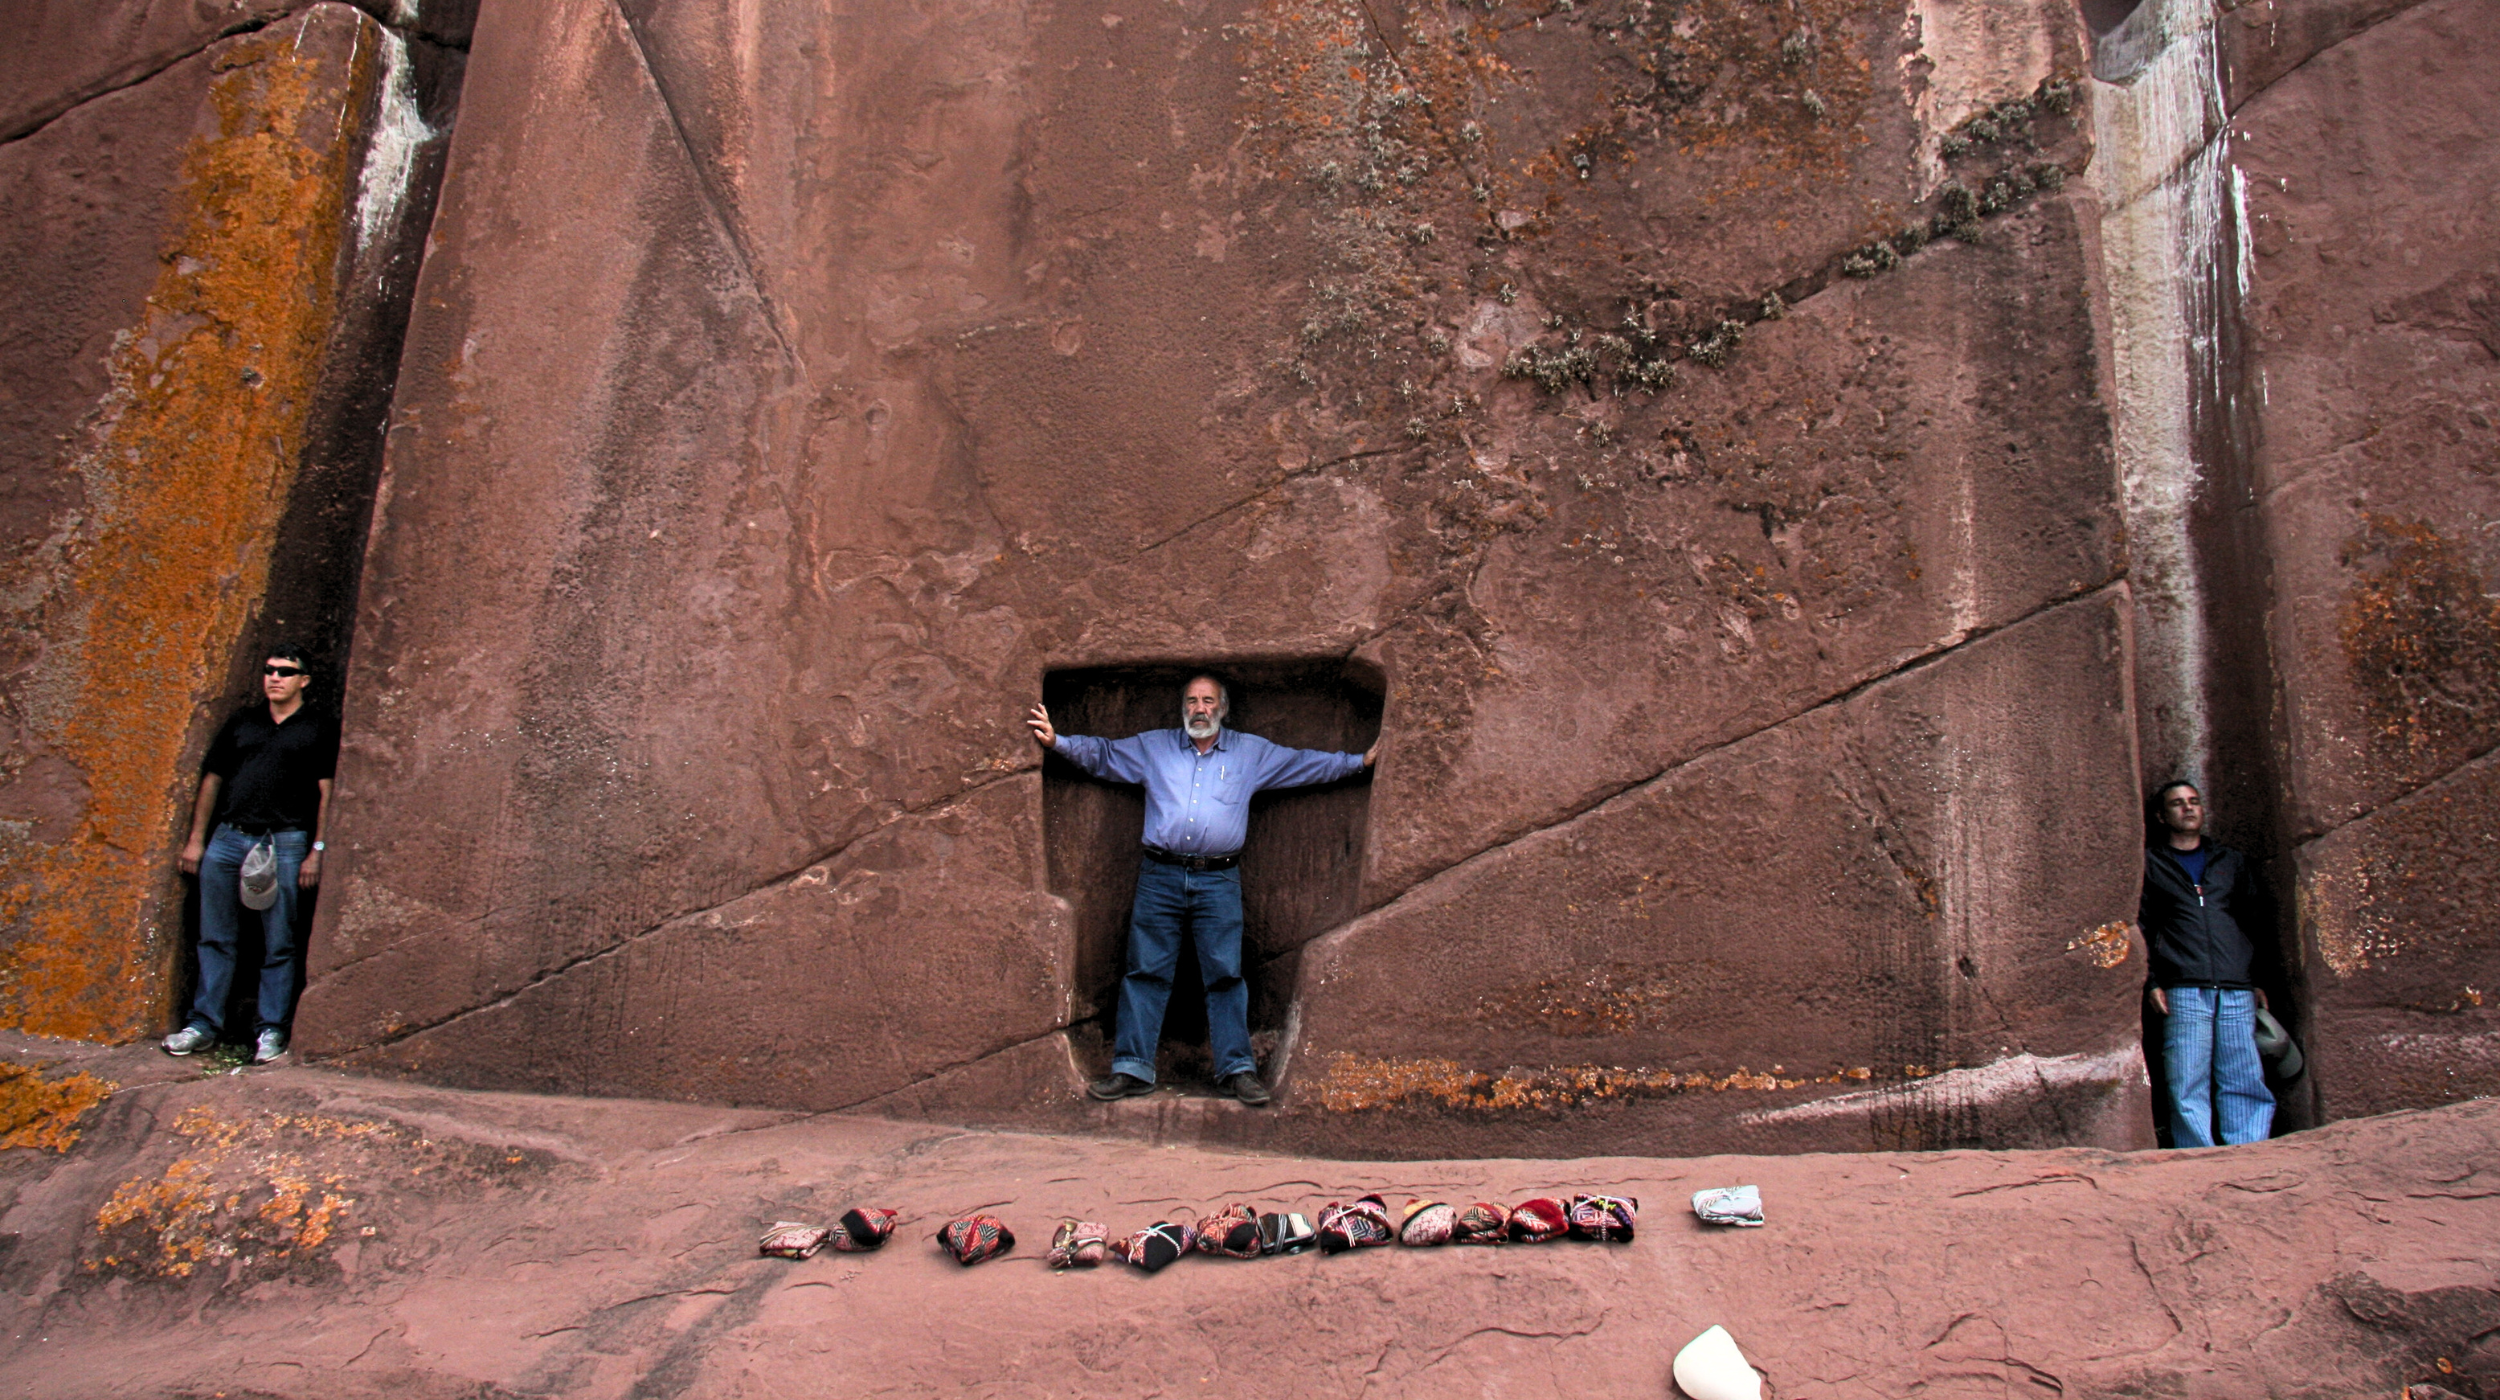 Die Mesa eines Inka-Schamanen mit seinen Chumpi-Steinen